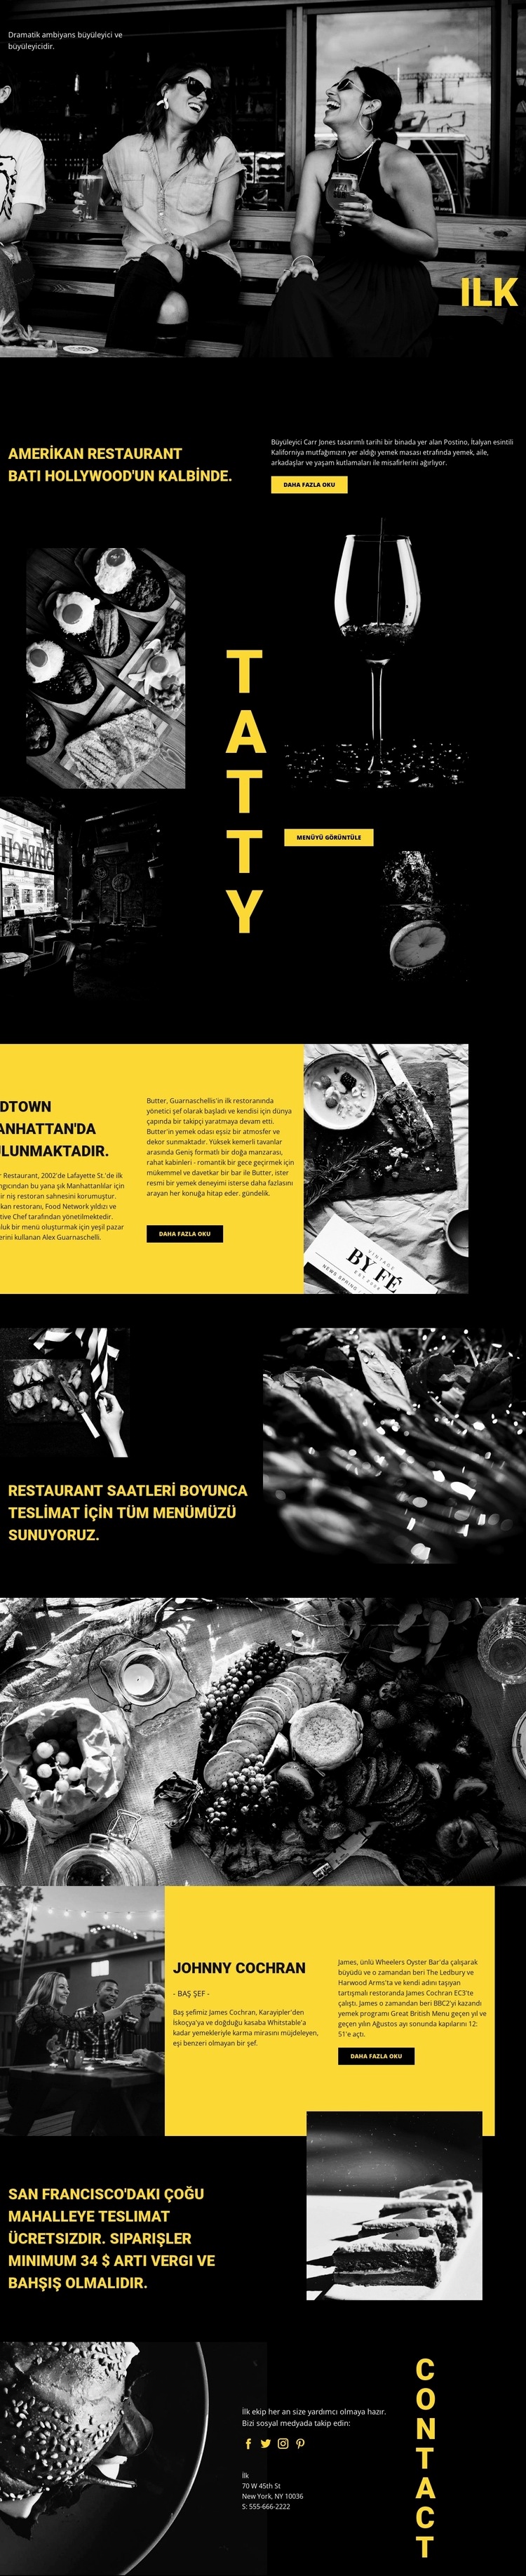 Dünyanın en iyi restoranı Web sitesi tasarımı